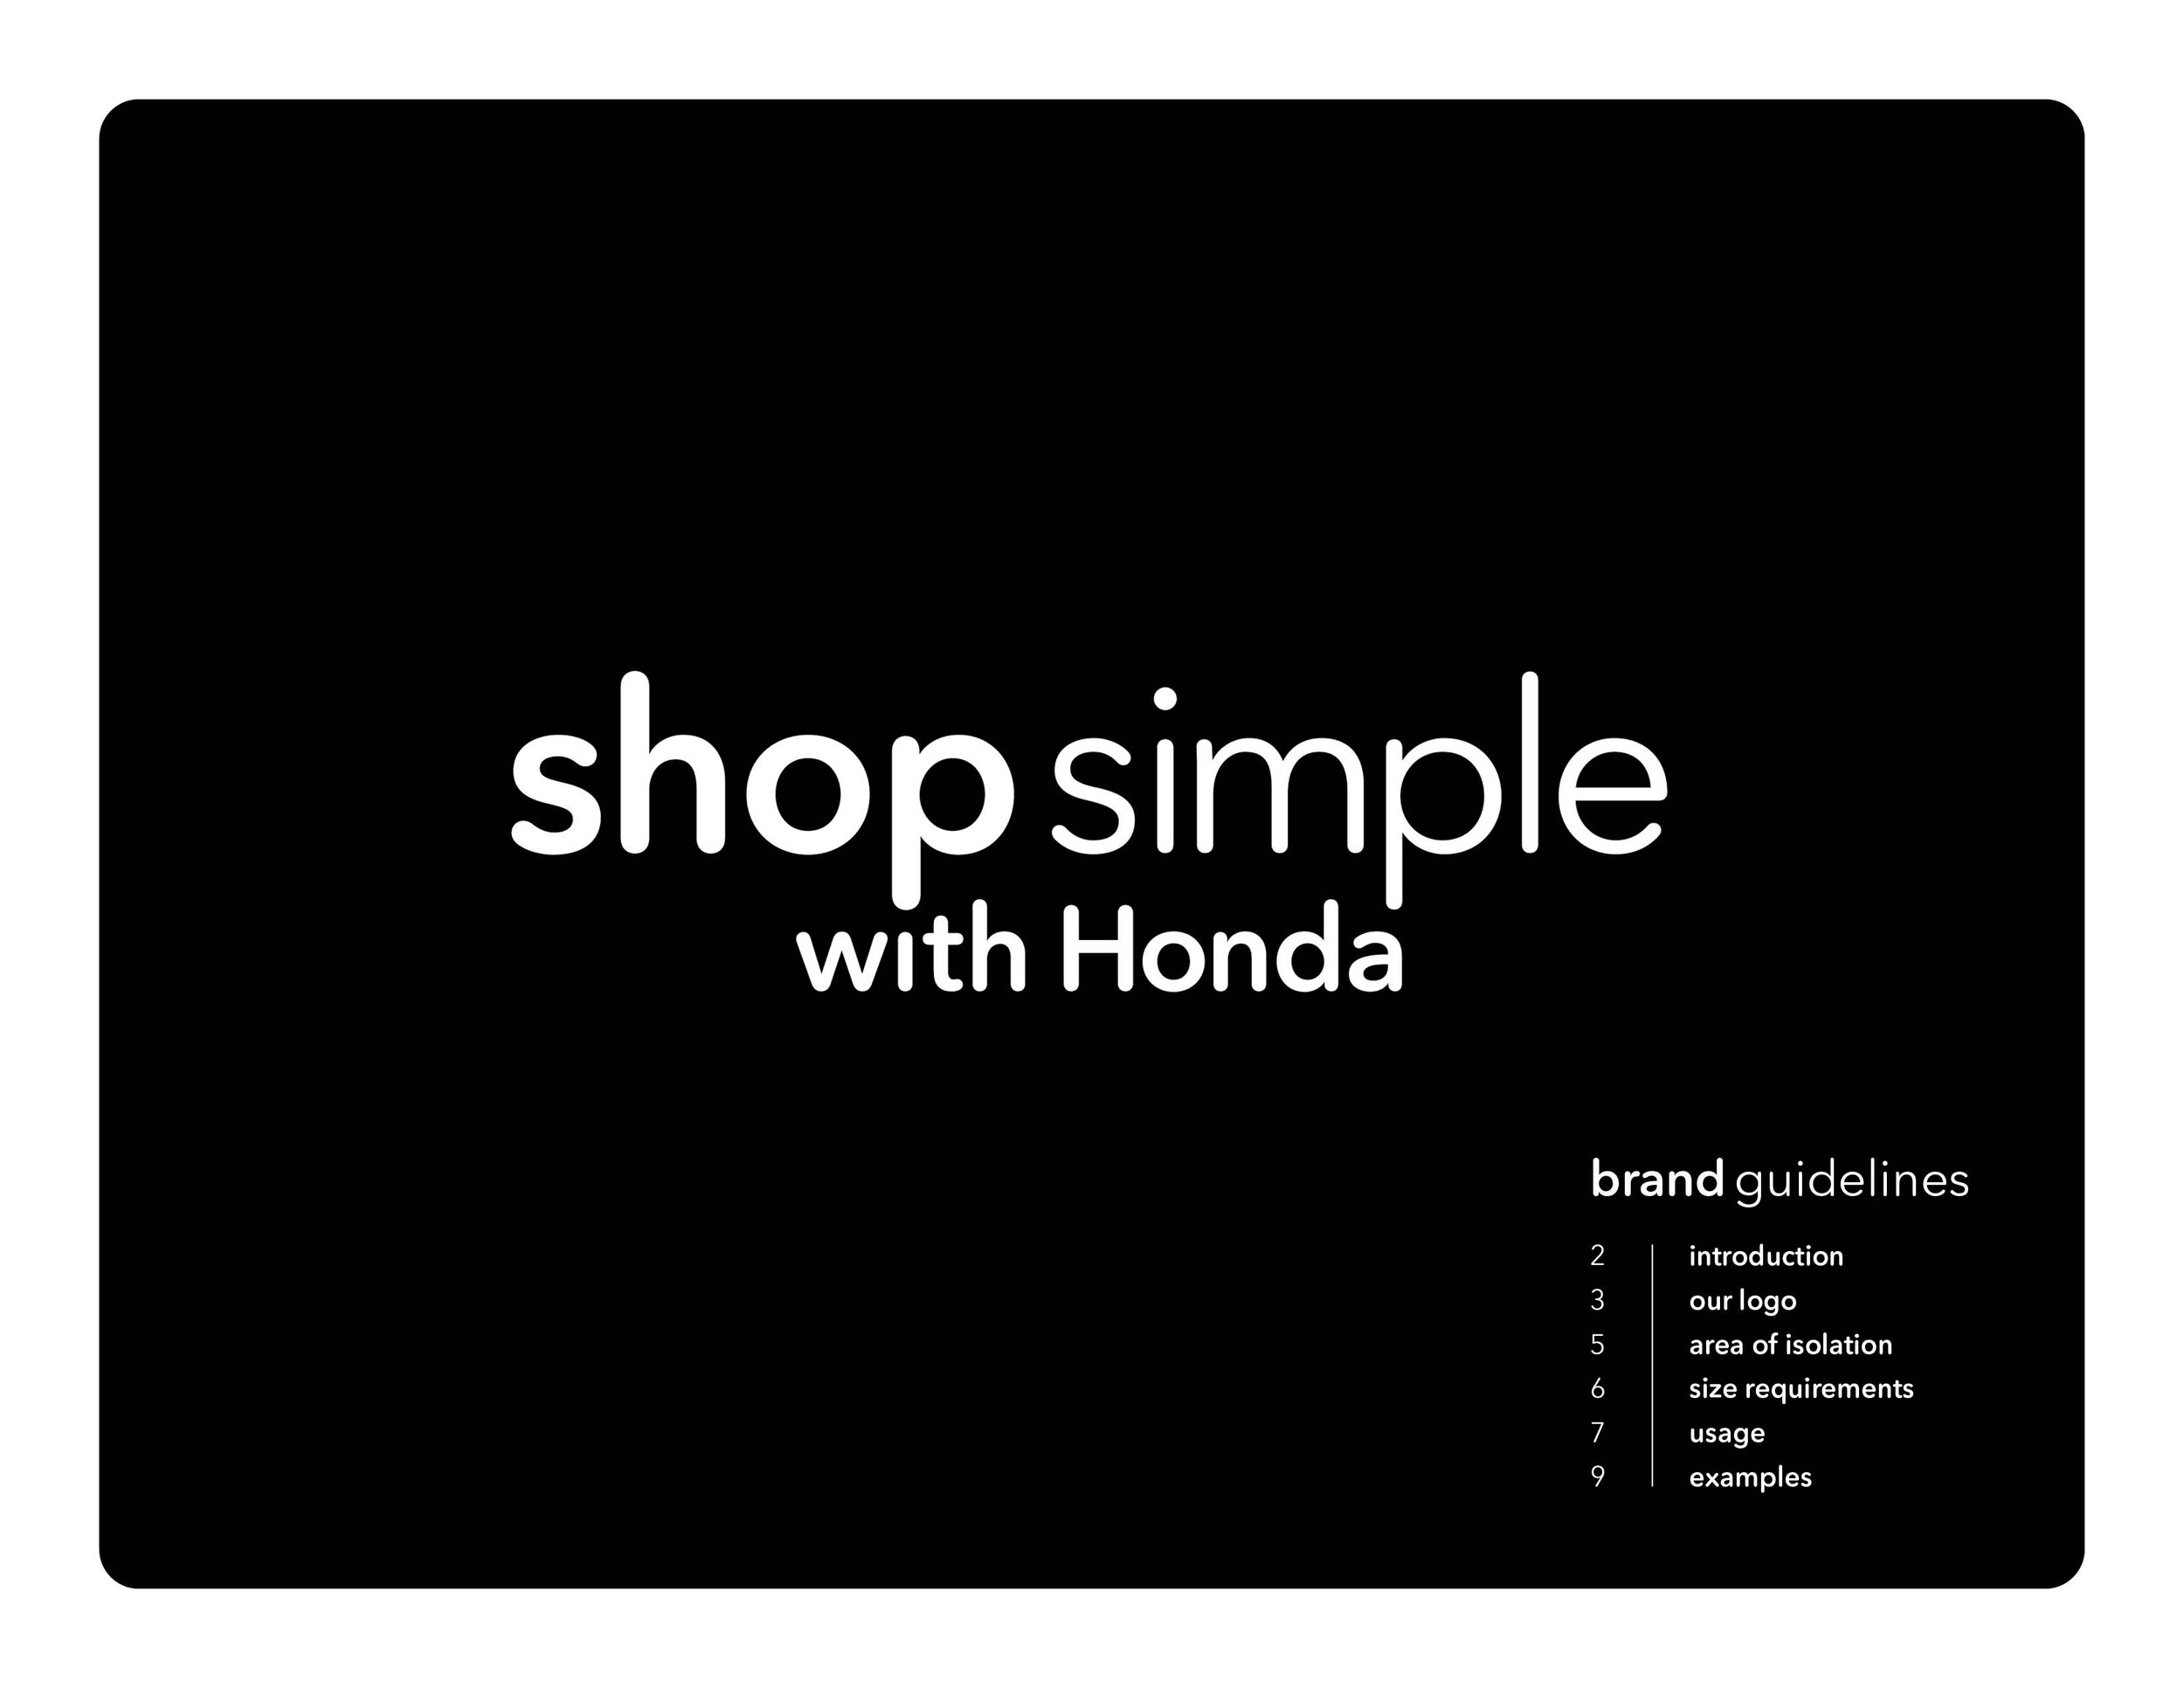 Honda_ShopSimple_SG_031620.jpg